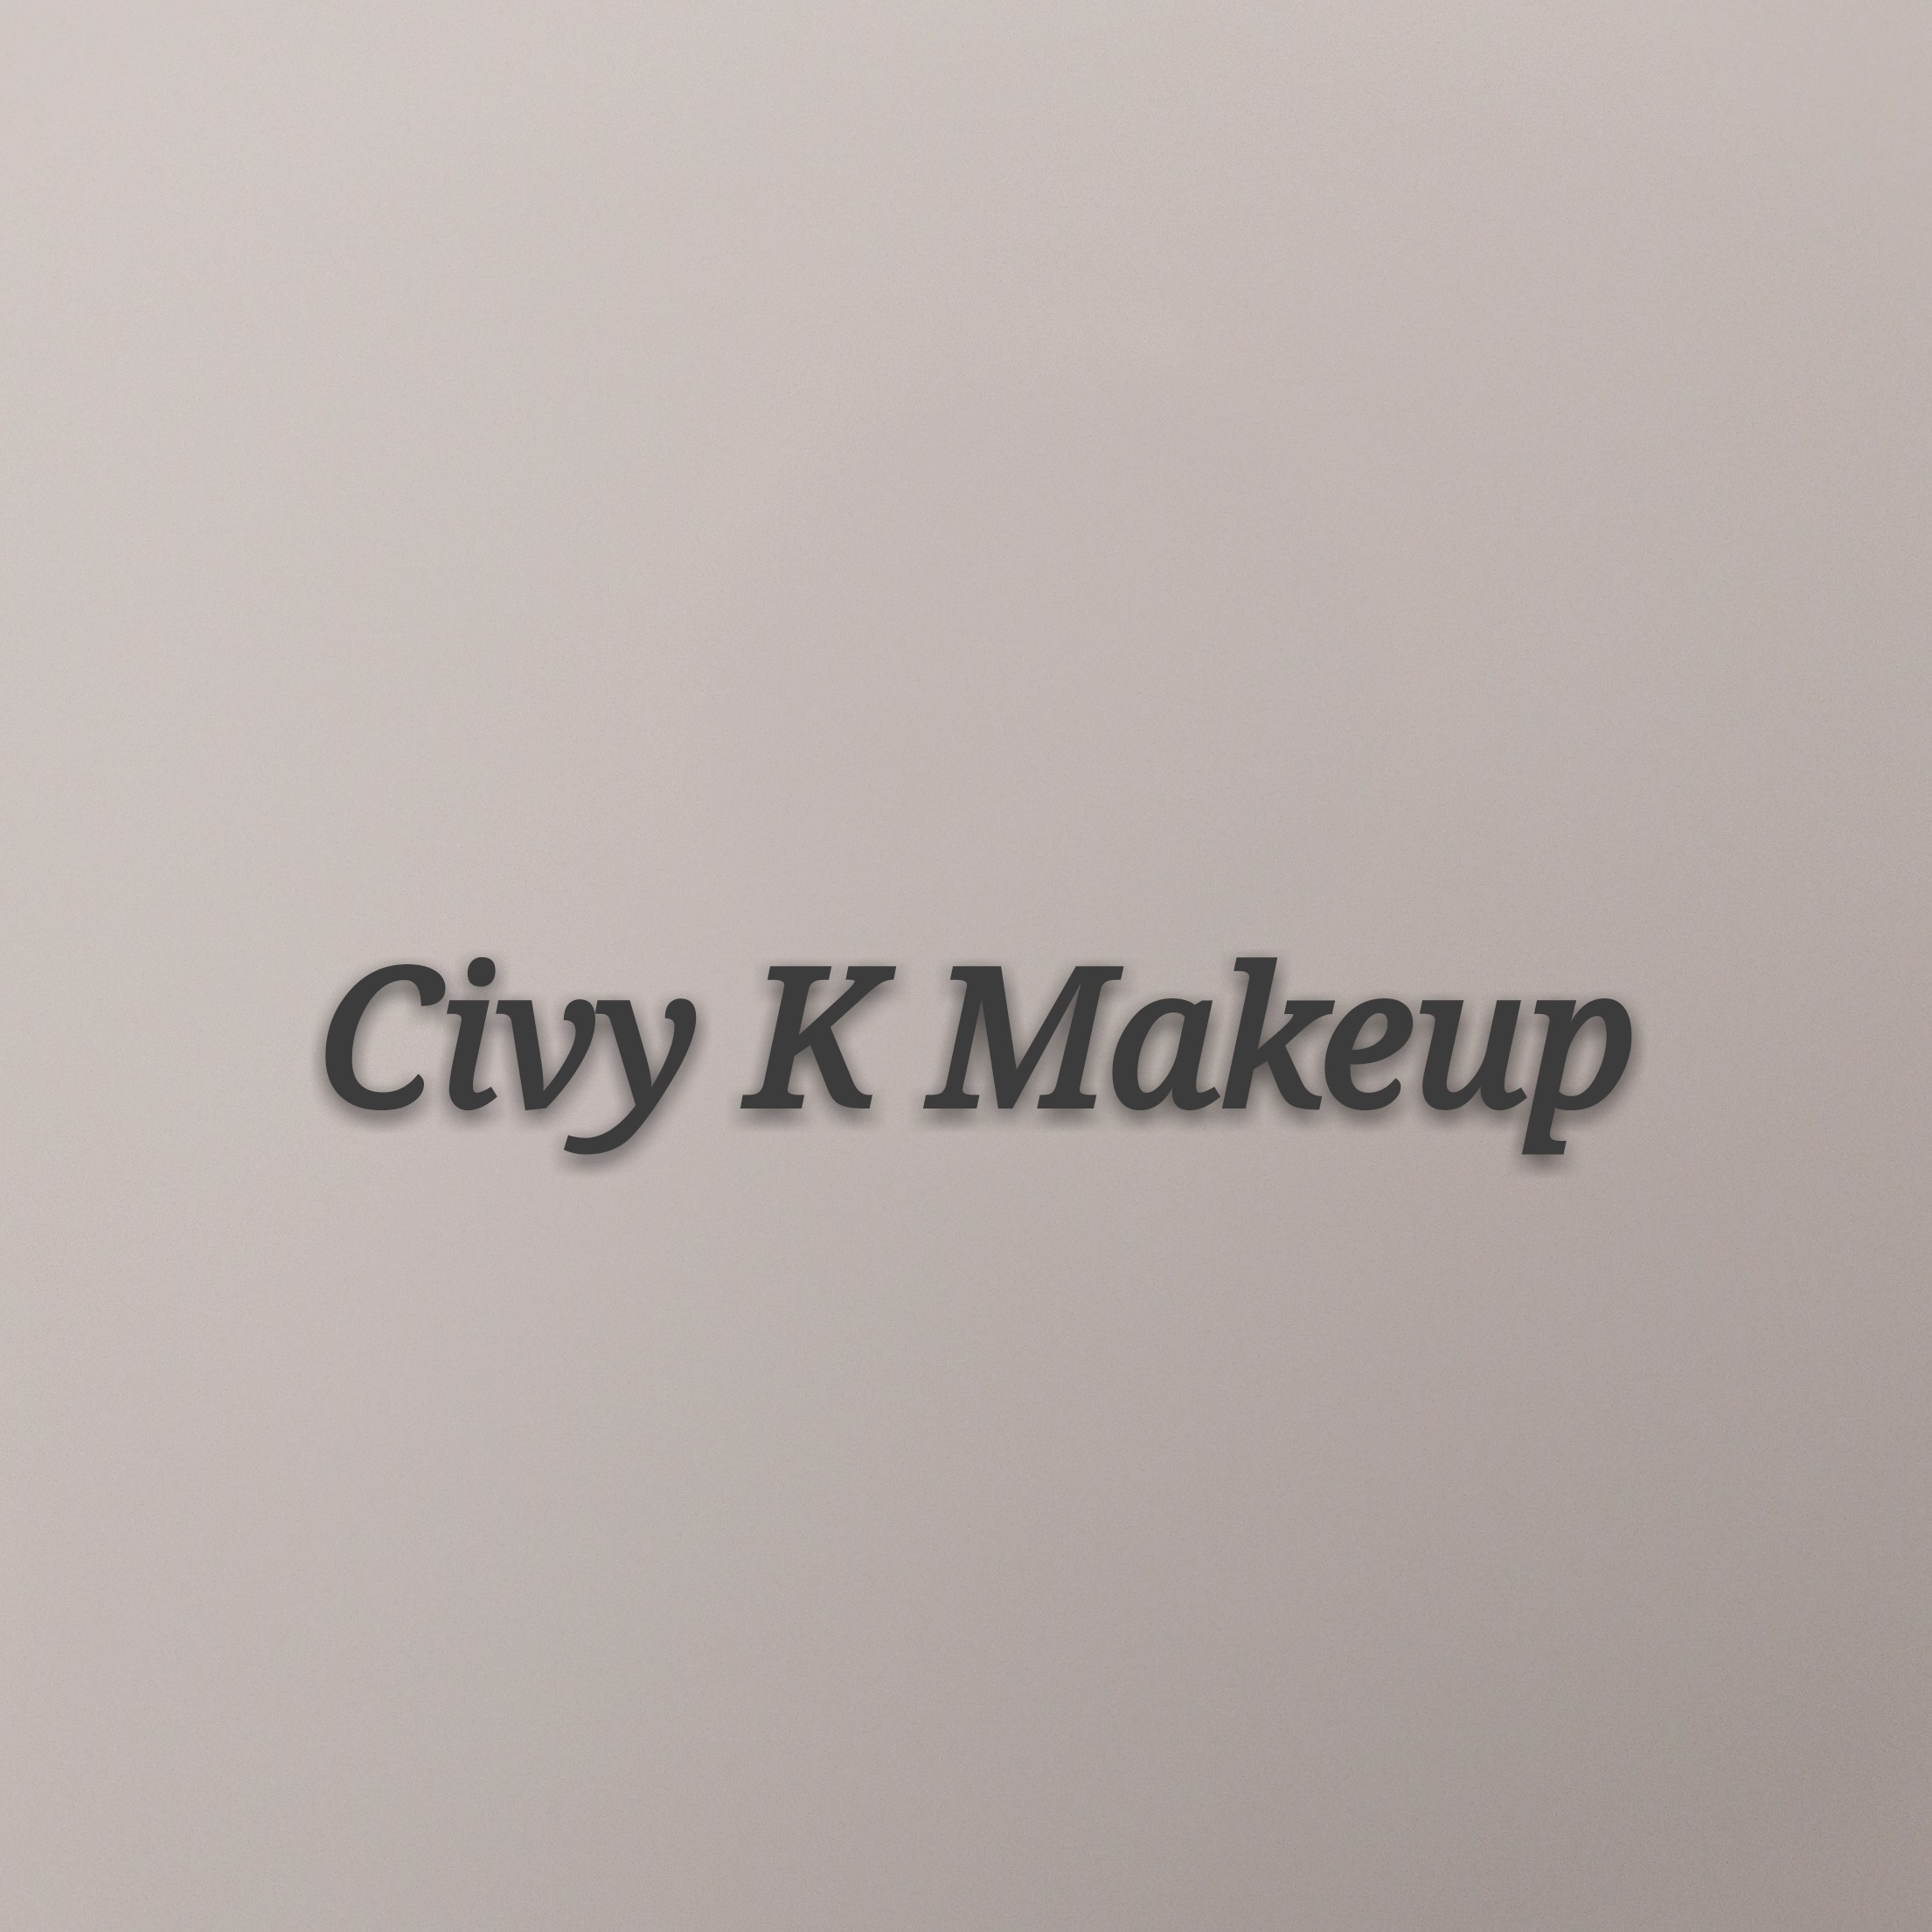 Civy K Makeup